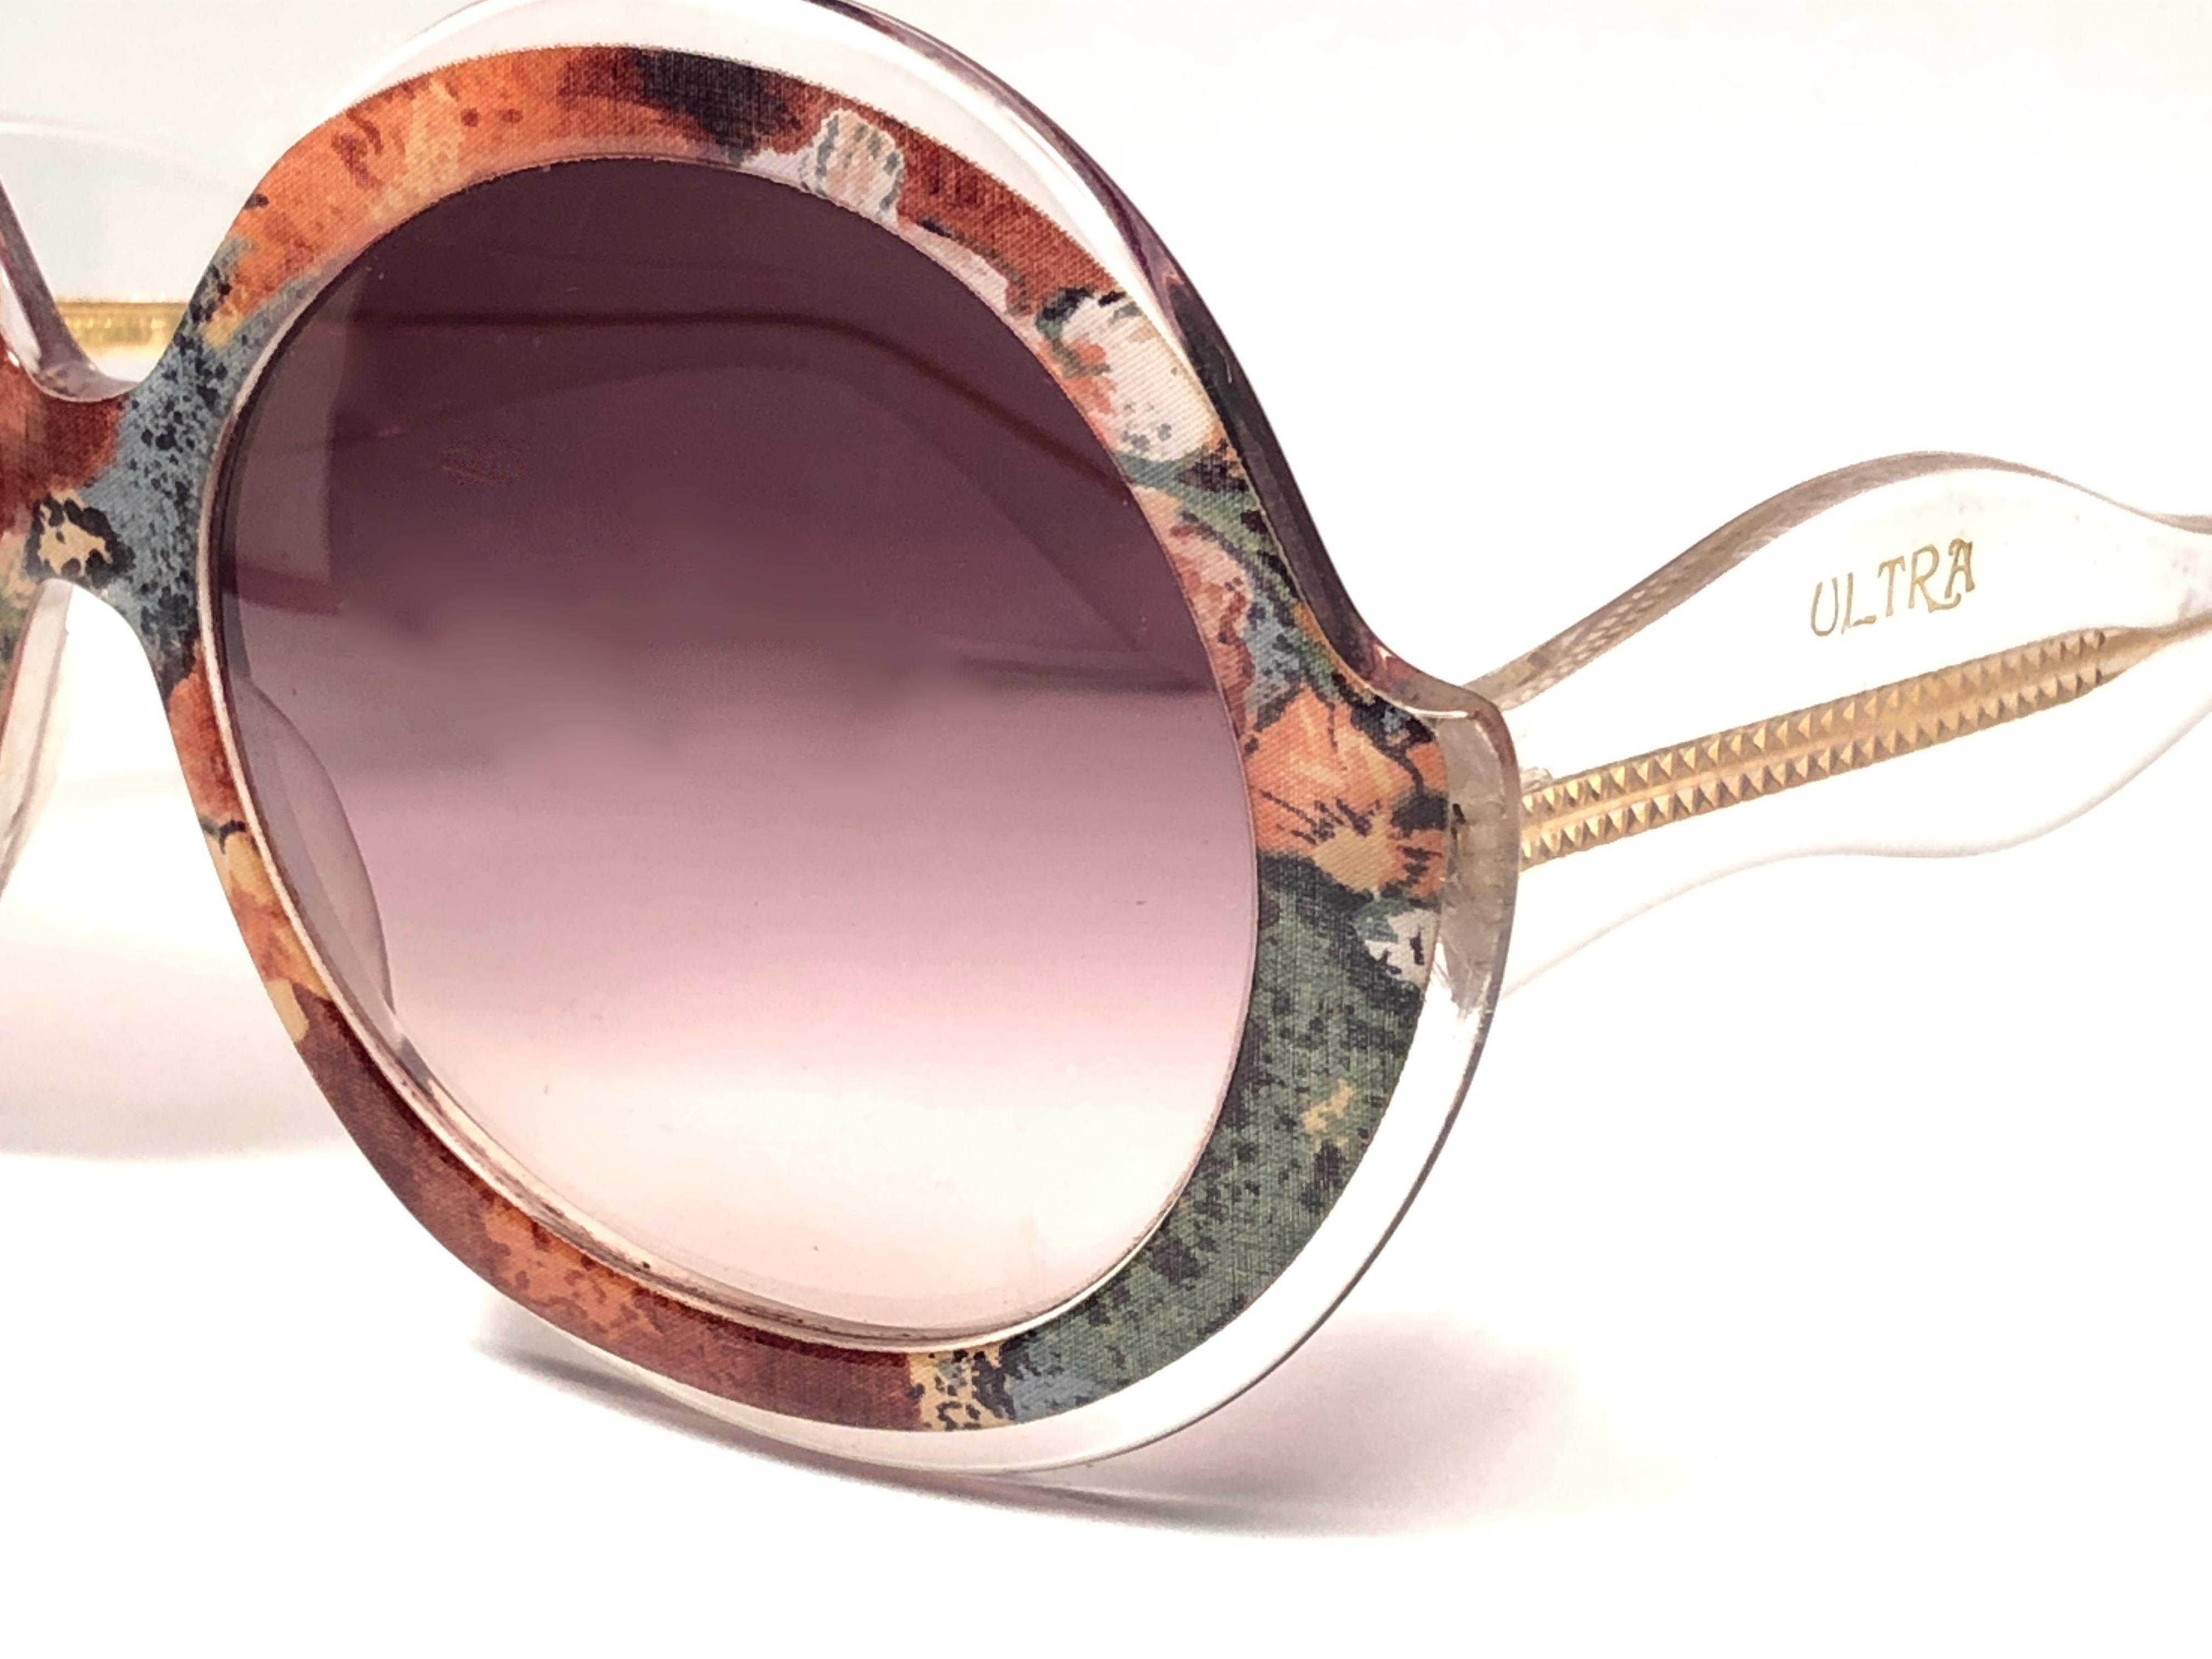 gradient lens sunglasses